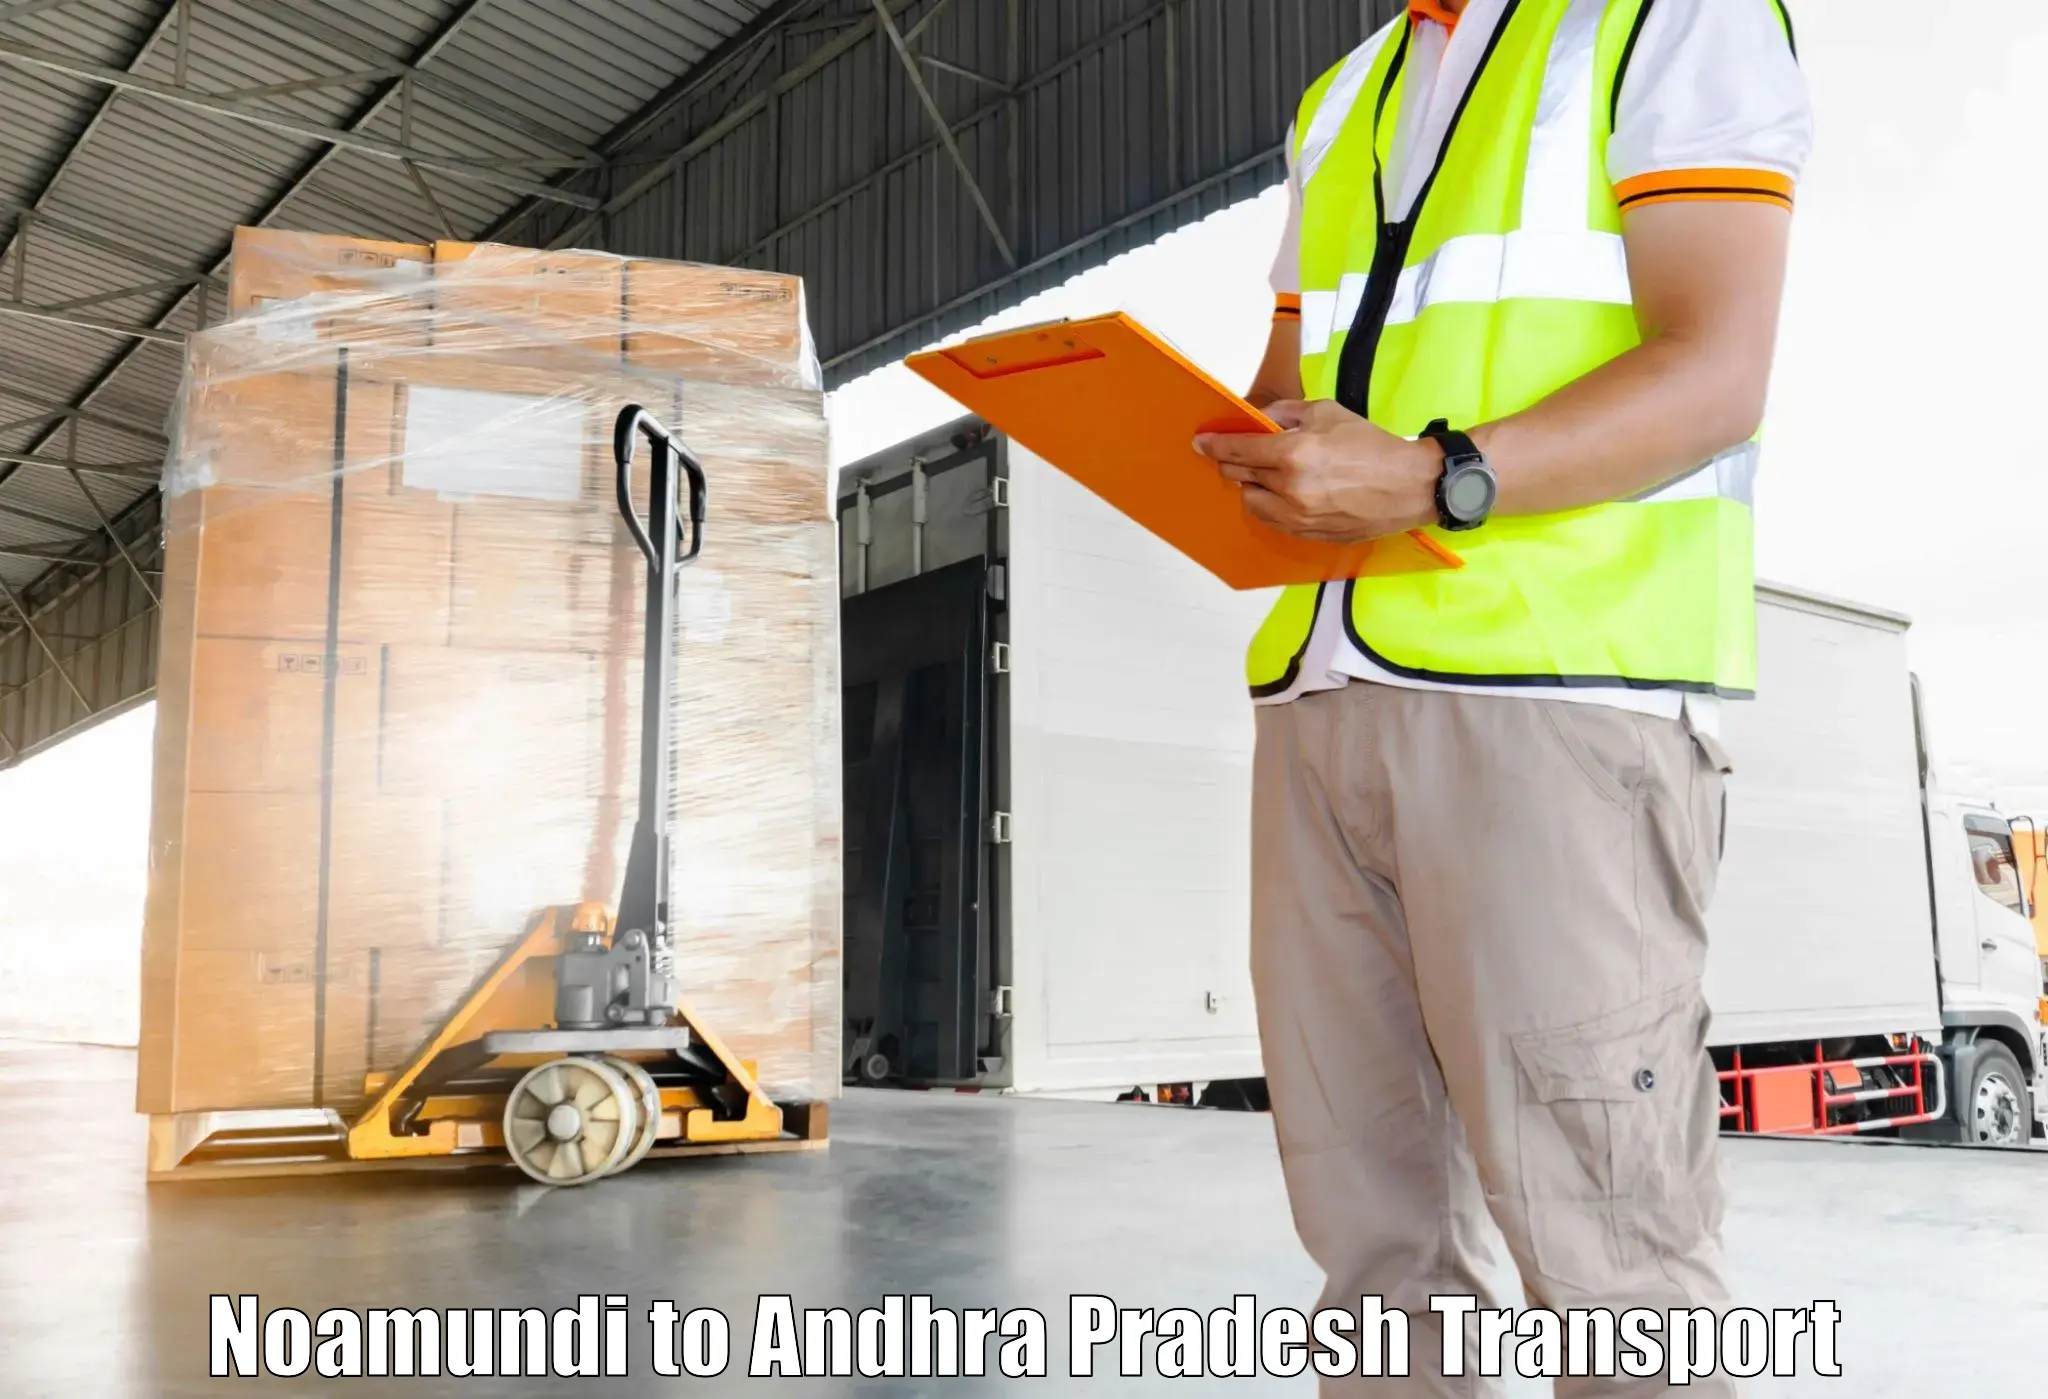 Shipping services in Noamundi to Punganur